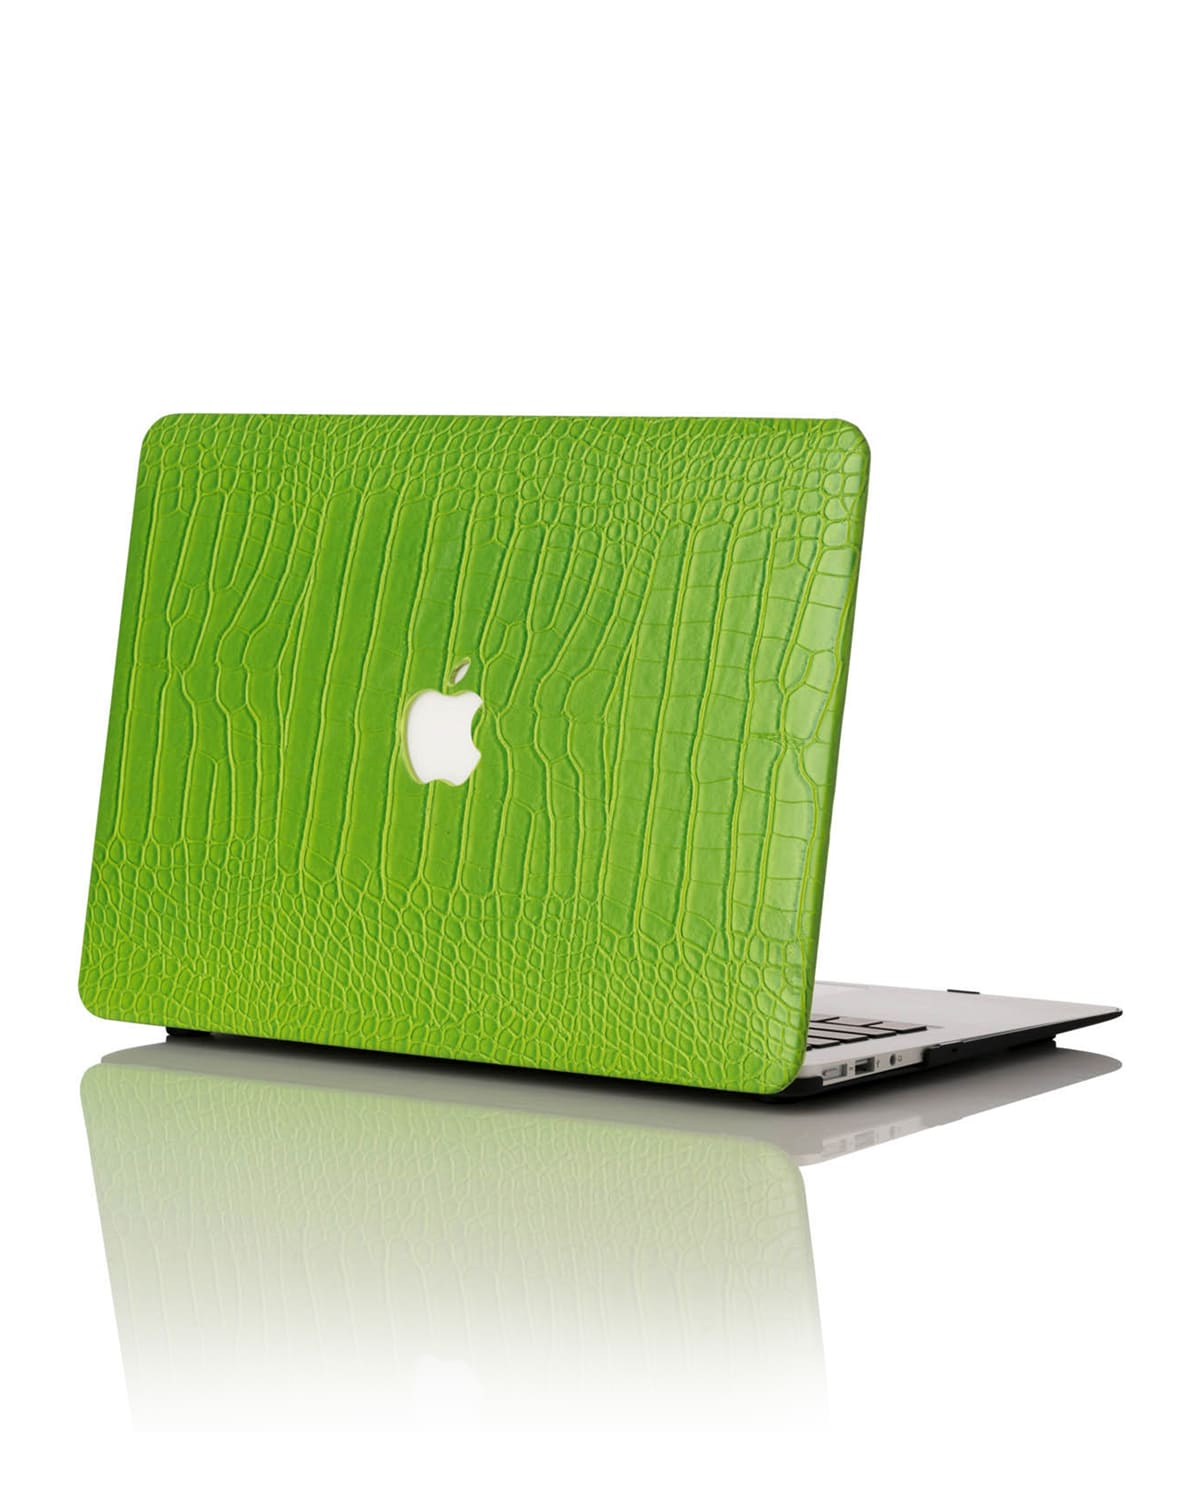 Glitter 15" MacBook Pro with TouchBar Case